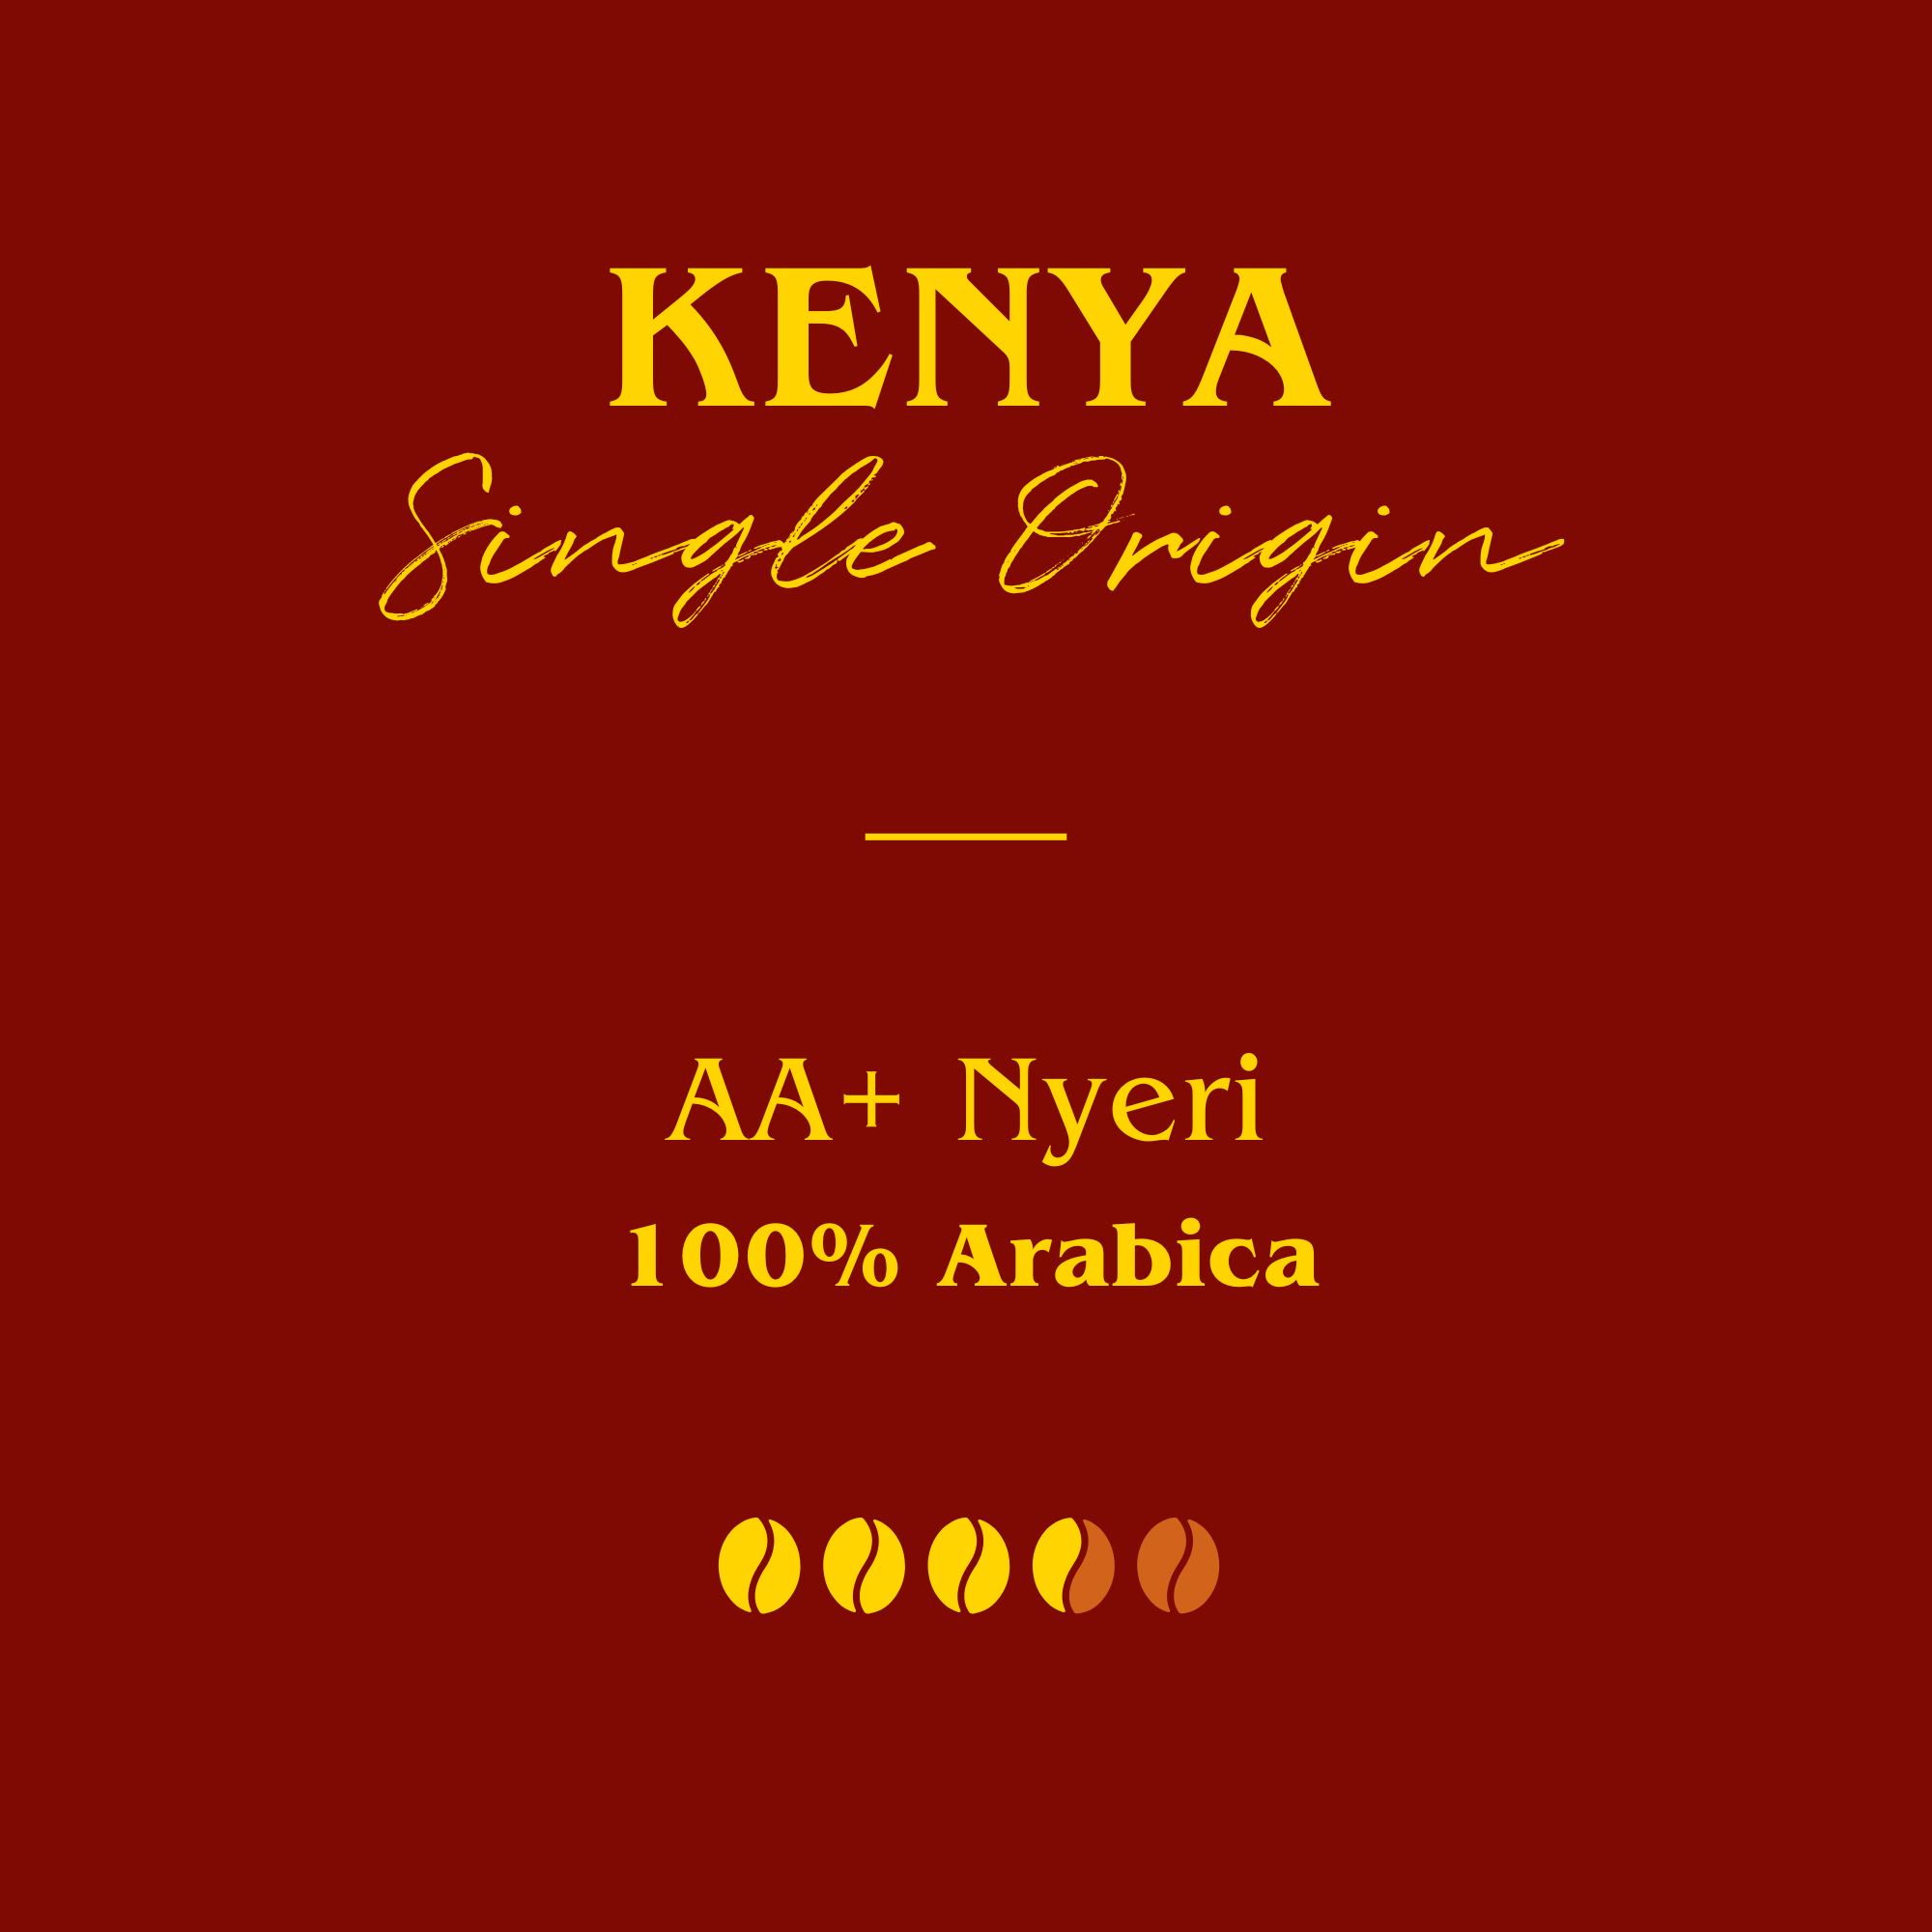 Kenya - AA+ Nyeri